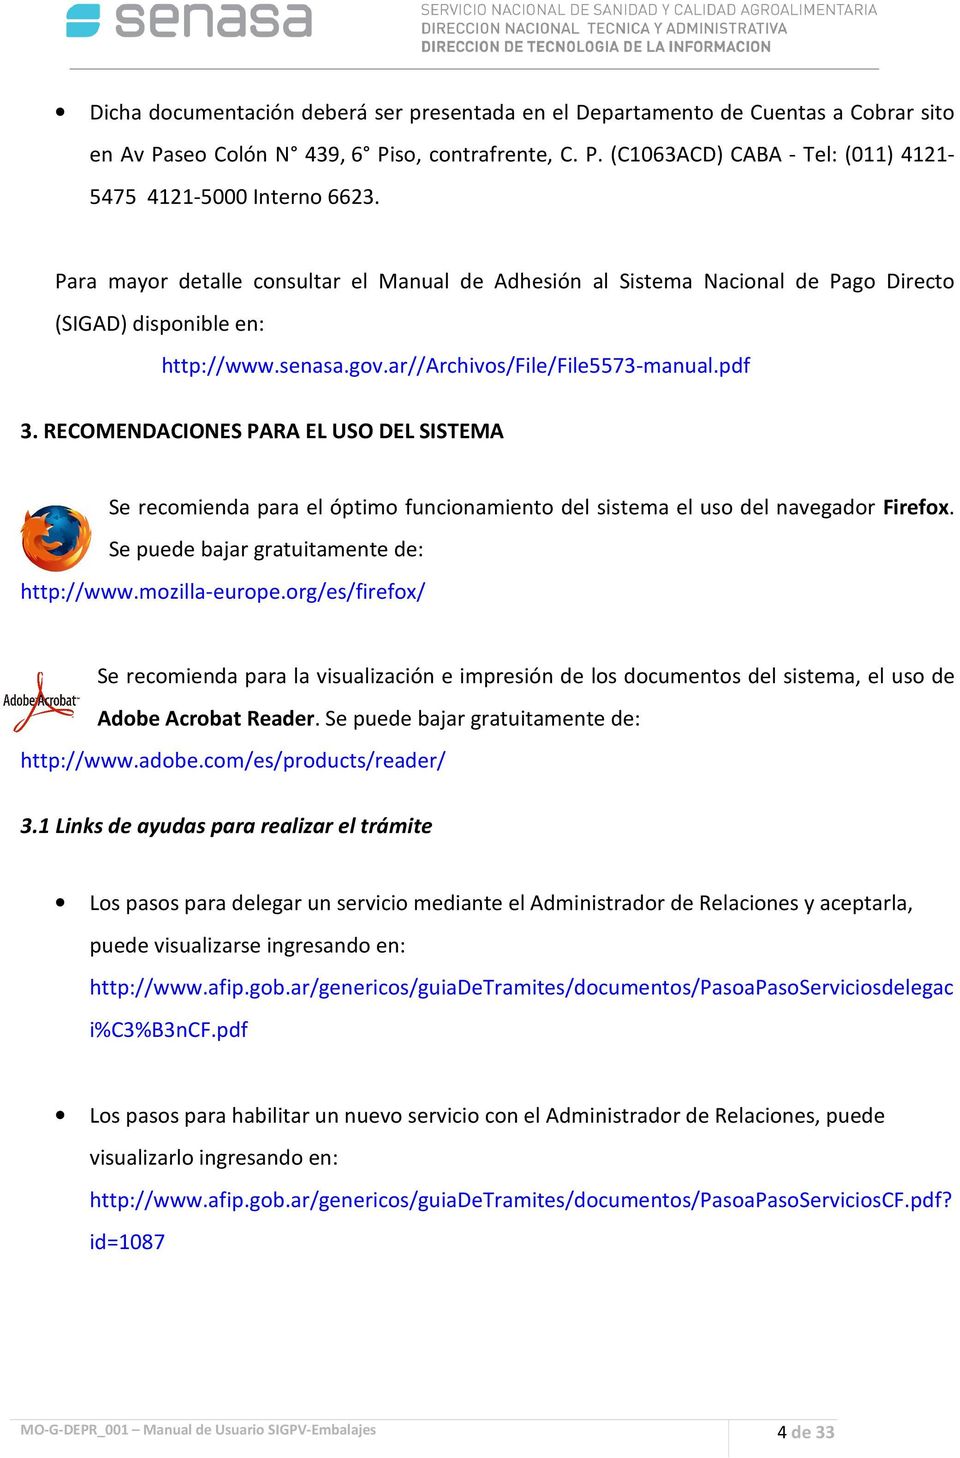 RECOMENDACIONES PARA EL USO DEL SISTEMA Se recomienda para el óptimo funcionamiento del sistema el uso del navegador Firefox. Se puede bajar gratuitamente de: http://www.mozilla-europe.